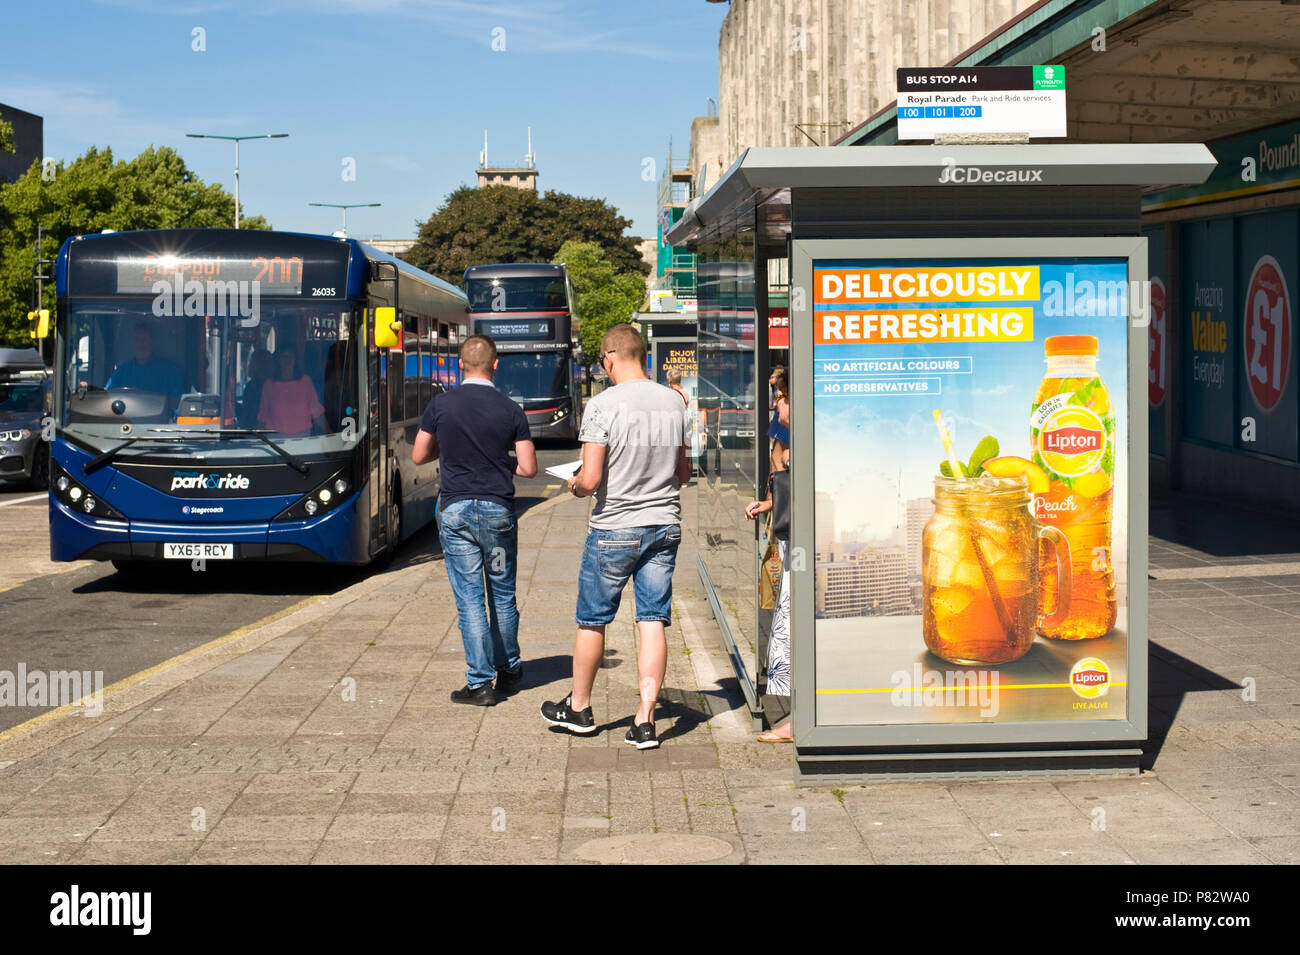 Arrêt de bus route JCDecaux billboard site web publicité Lipton thé glacé en plymouth Devon England UK Banque D'Images